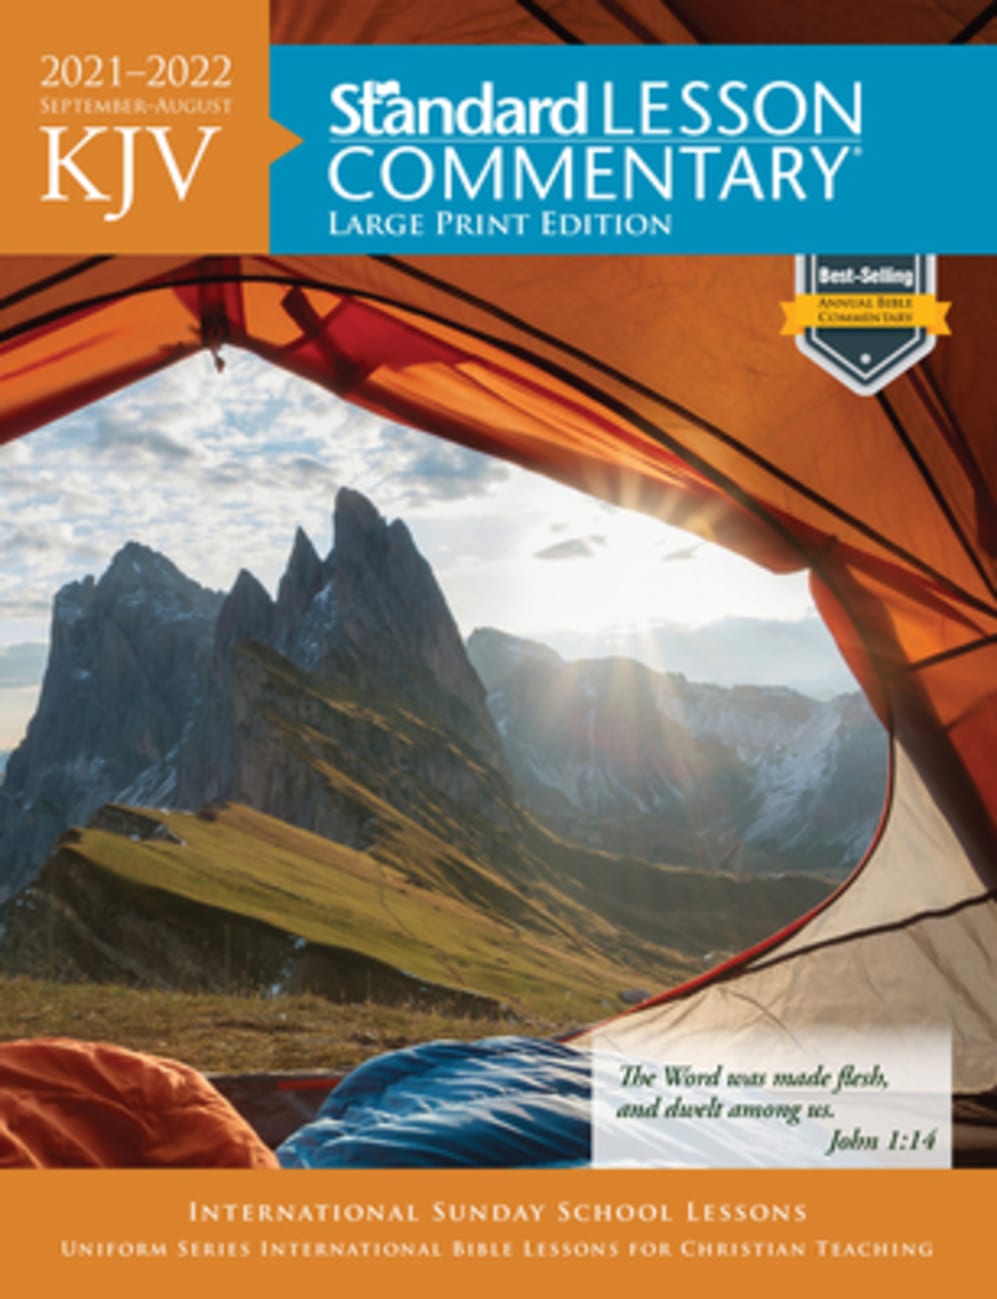 KJV Standard Lesson Commentary Large Print Edition 2021-2022 (Kjv Standard Lesson Commentary Series) Paperback